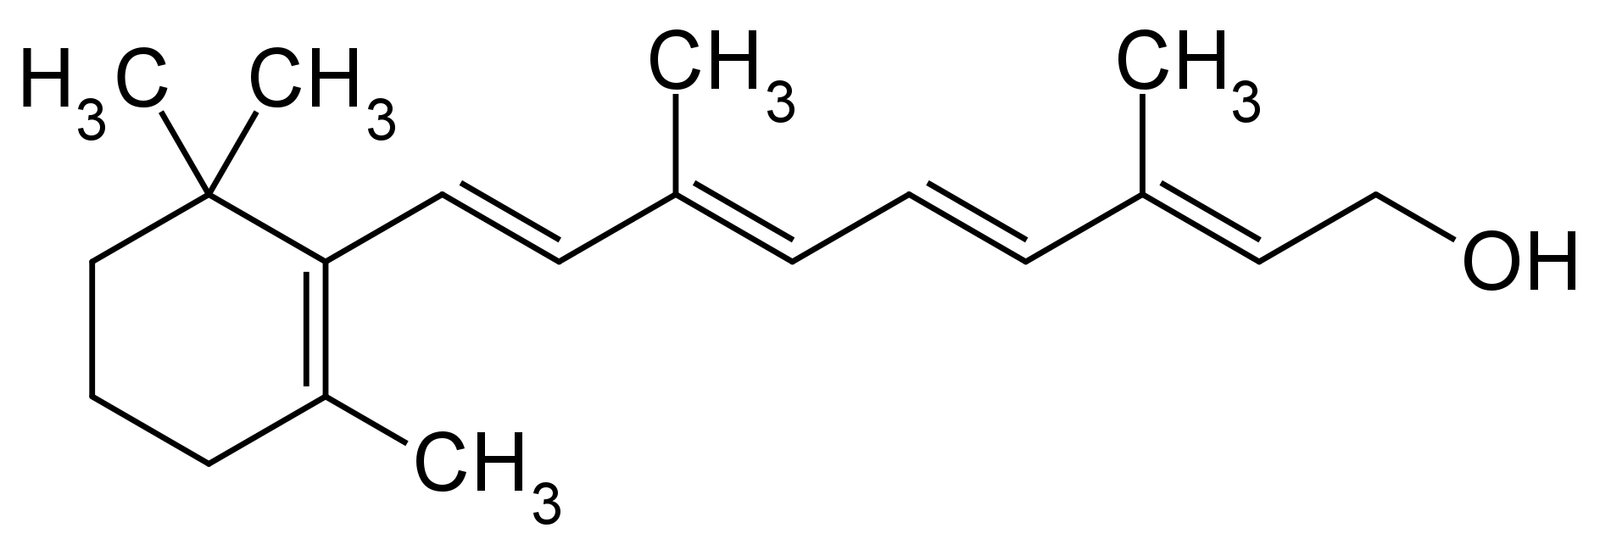 ريتينول - الريتنول  فيتامين أ (A)   Retinol